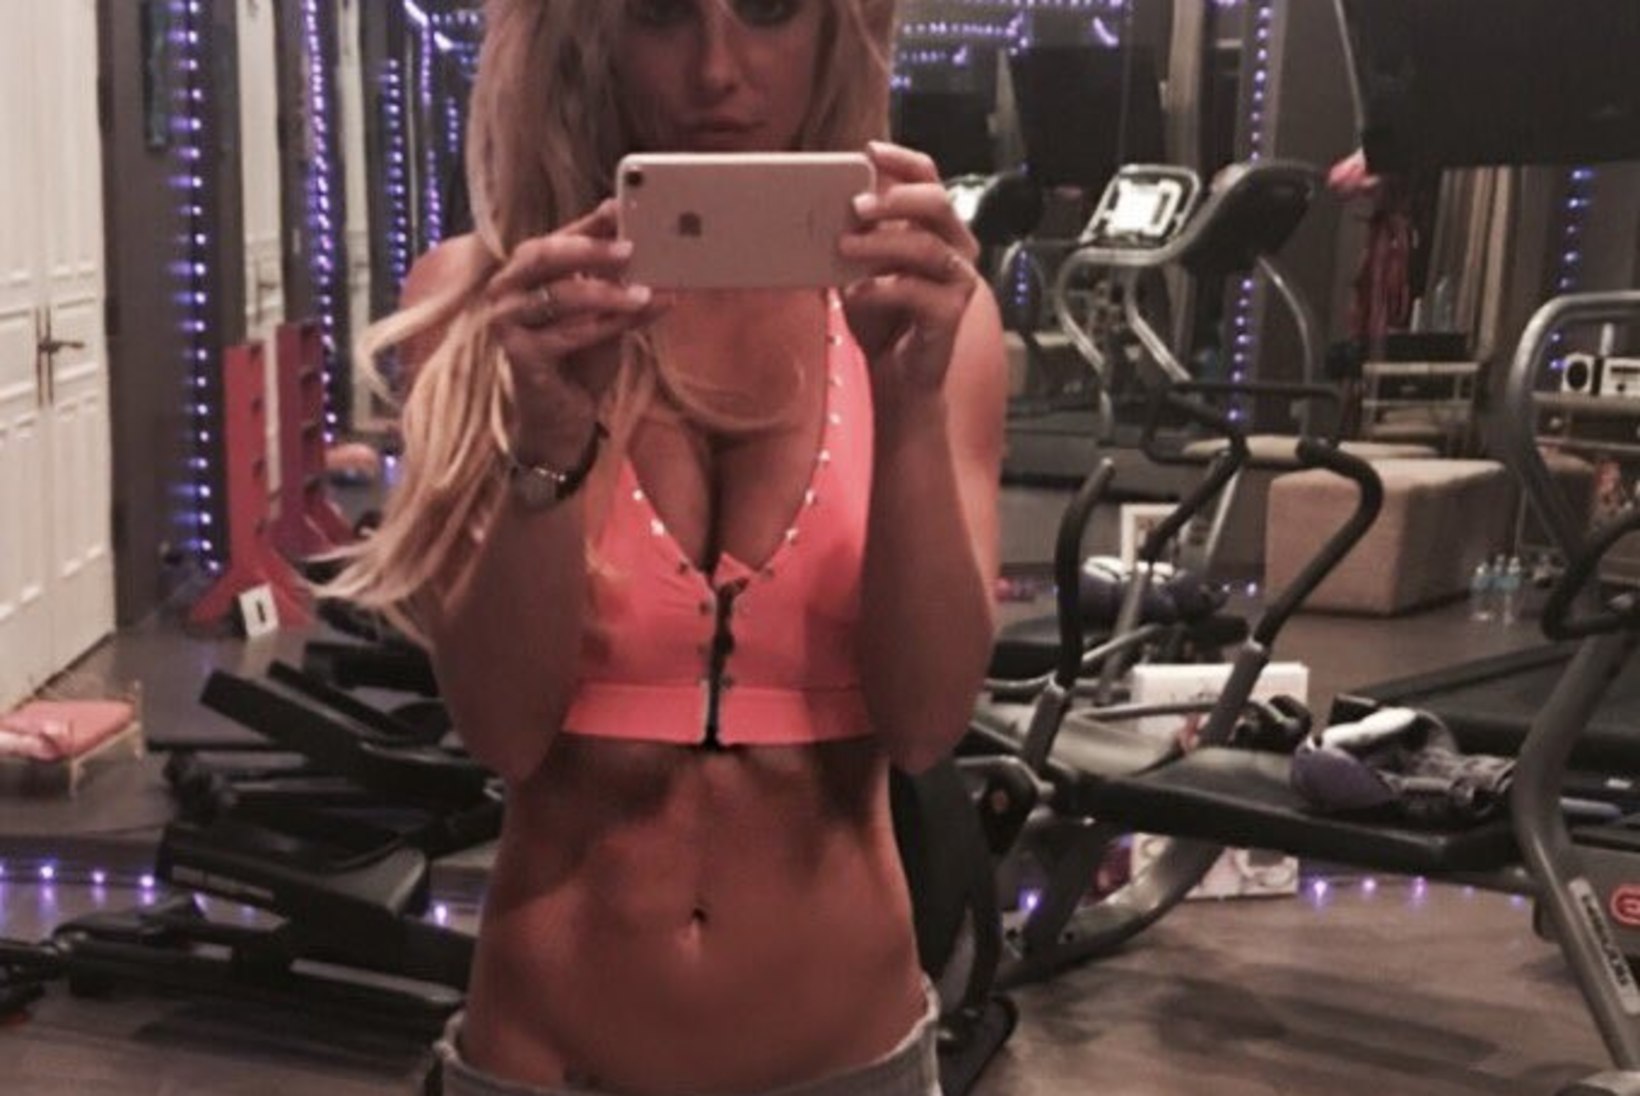 Britney eputab oma trimmis kehaga - aga kas selline riietus on ikka jõusaalis sünnis?!